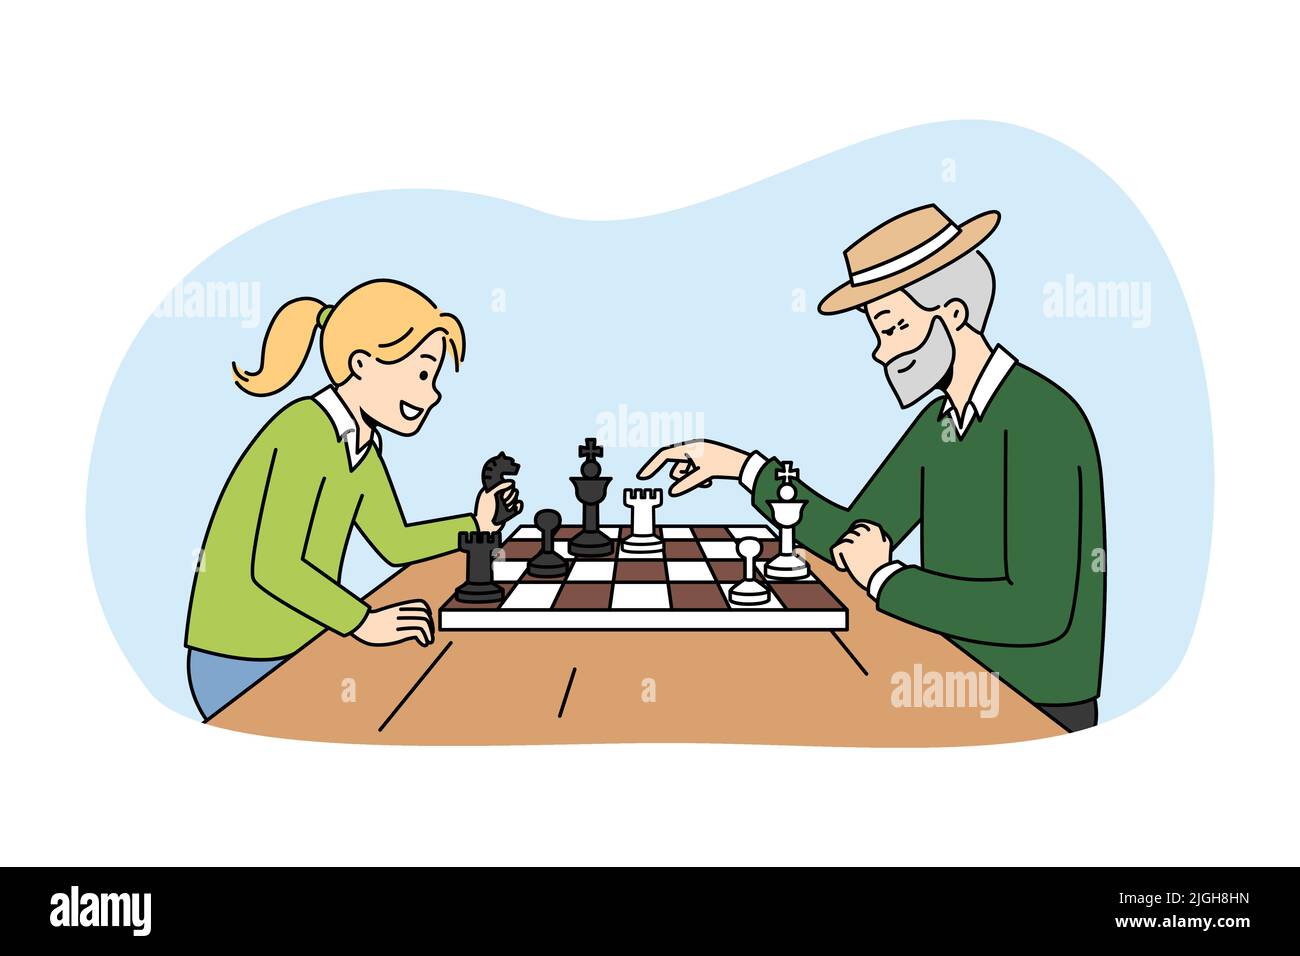 Grand-père mature jouant aux échecs avec une petite fille. Joyeux homme âgé aimez le jeu de société avec un petit enfant. Loisirs et loisirs. Illustration vectorielle. Illustration de Vecteur